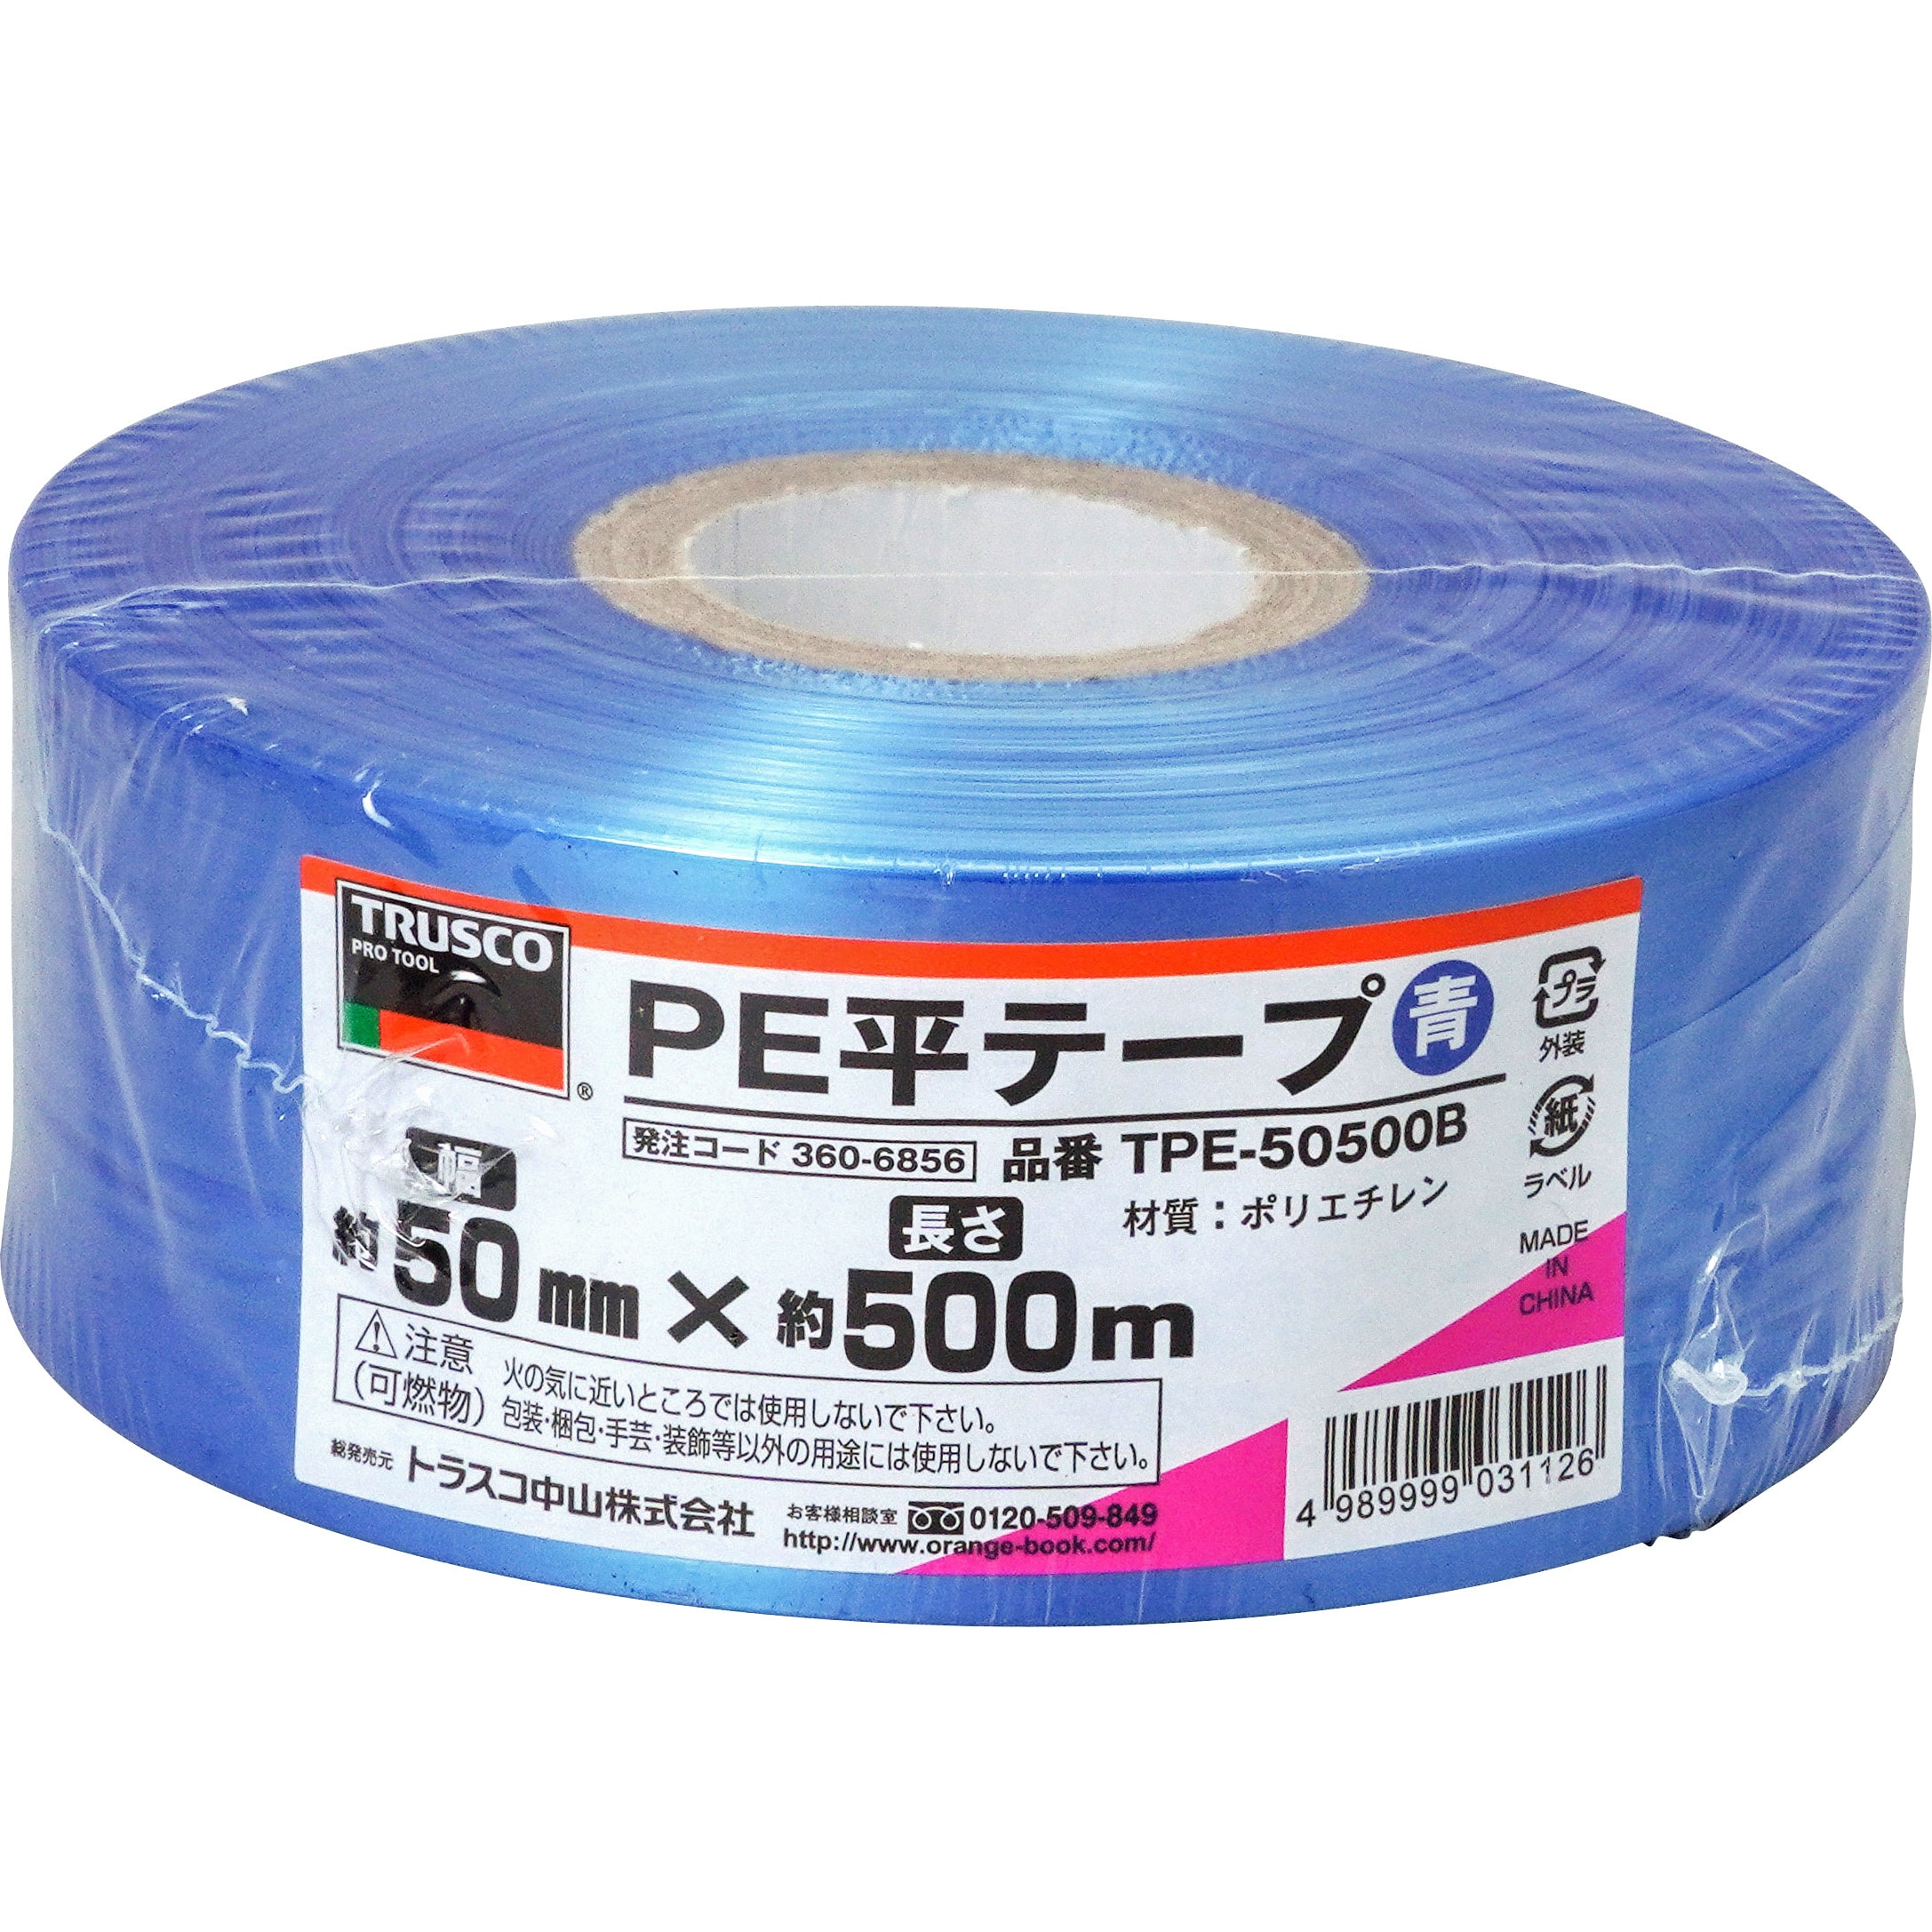 TRUSCO(トラスコ) PEテープ 50mm×500m 白 PE-50 - 3